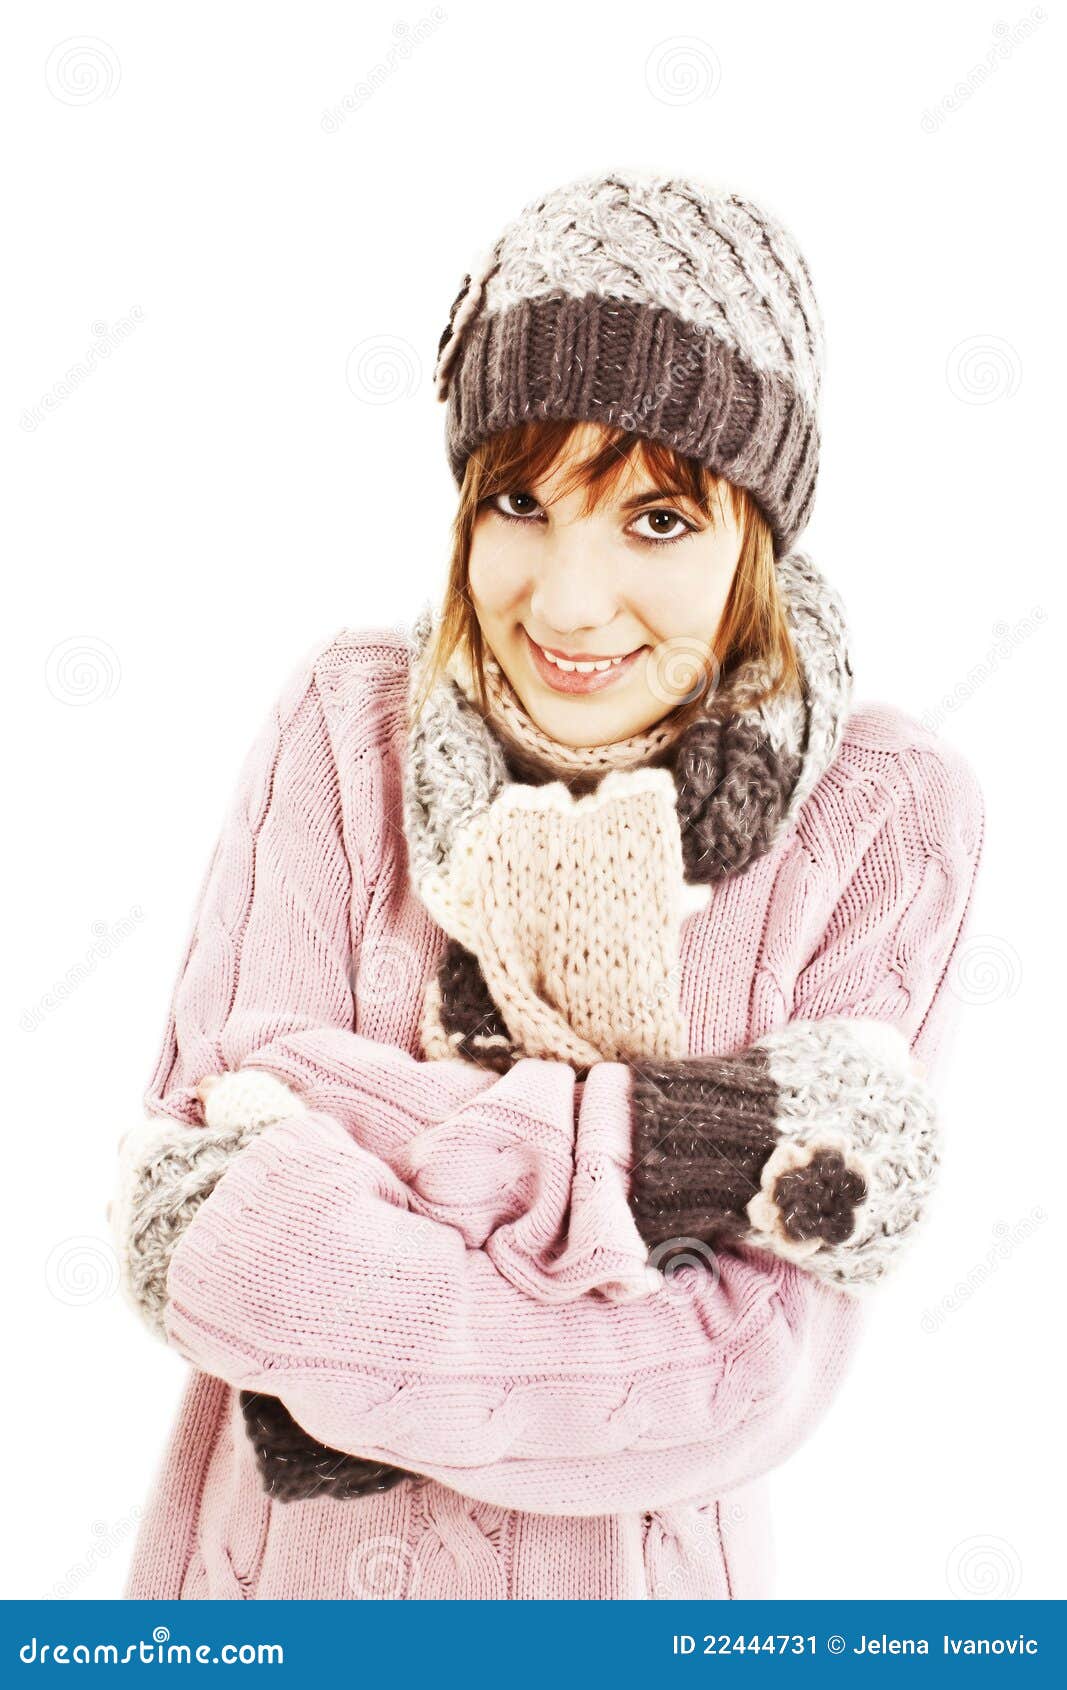 Freezing Teenage Girl Stock Image - Image: 22444731